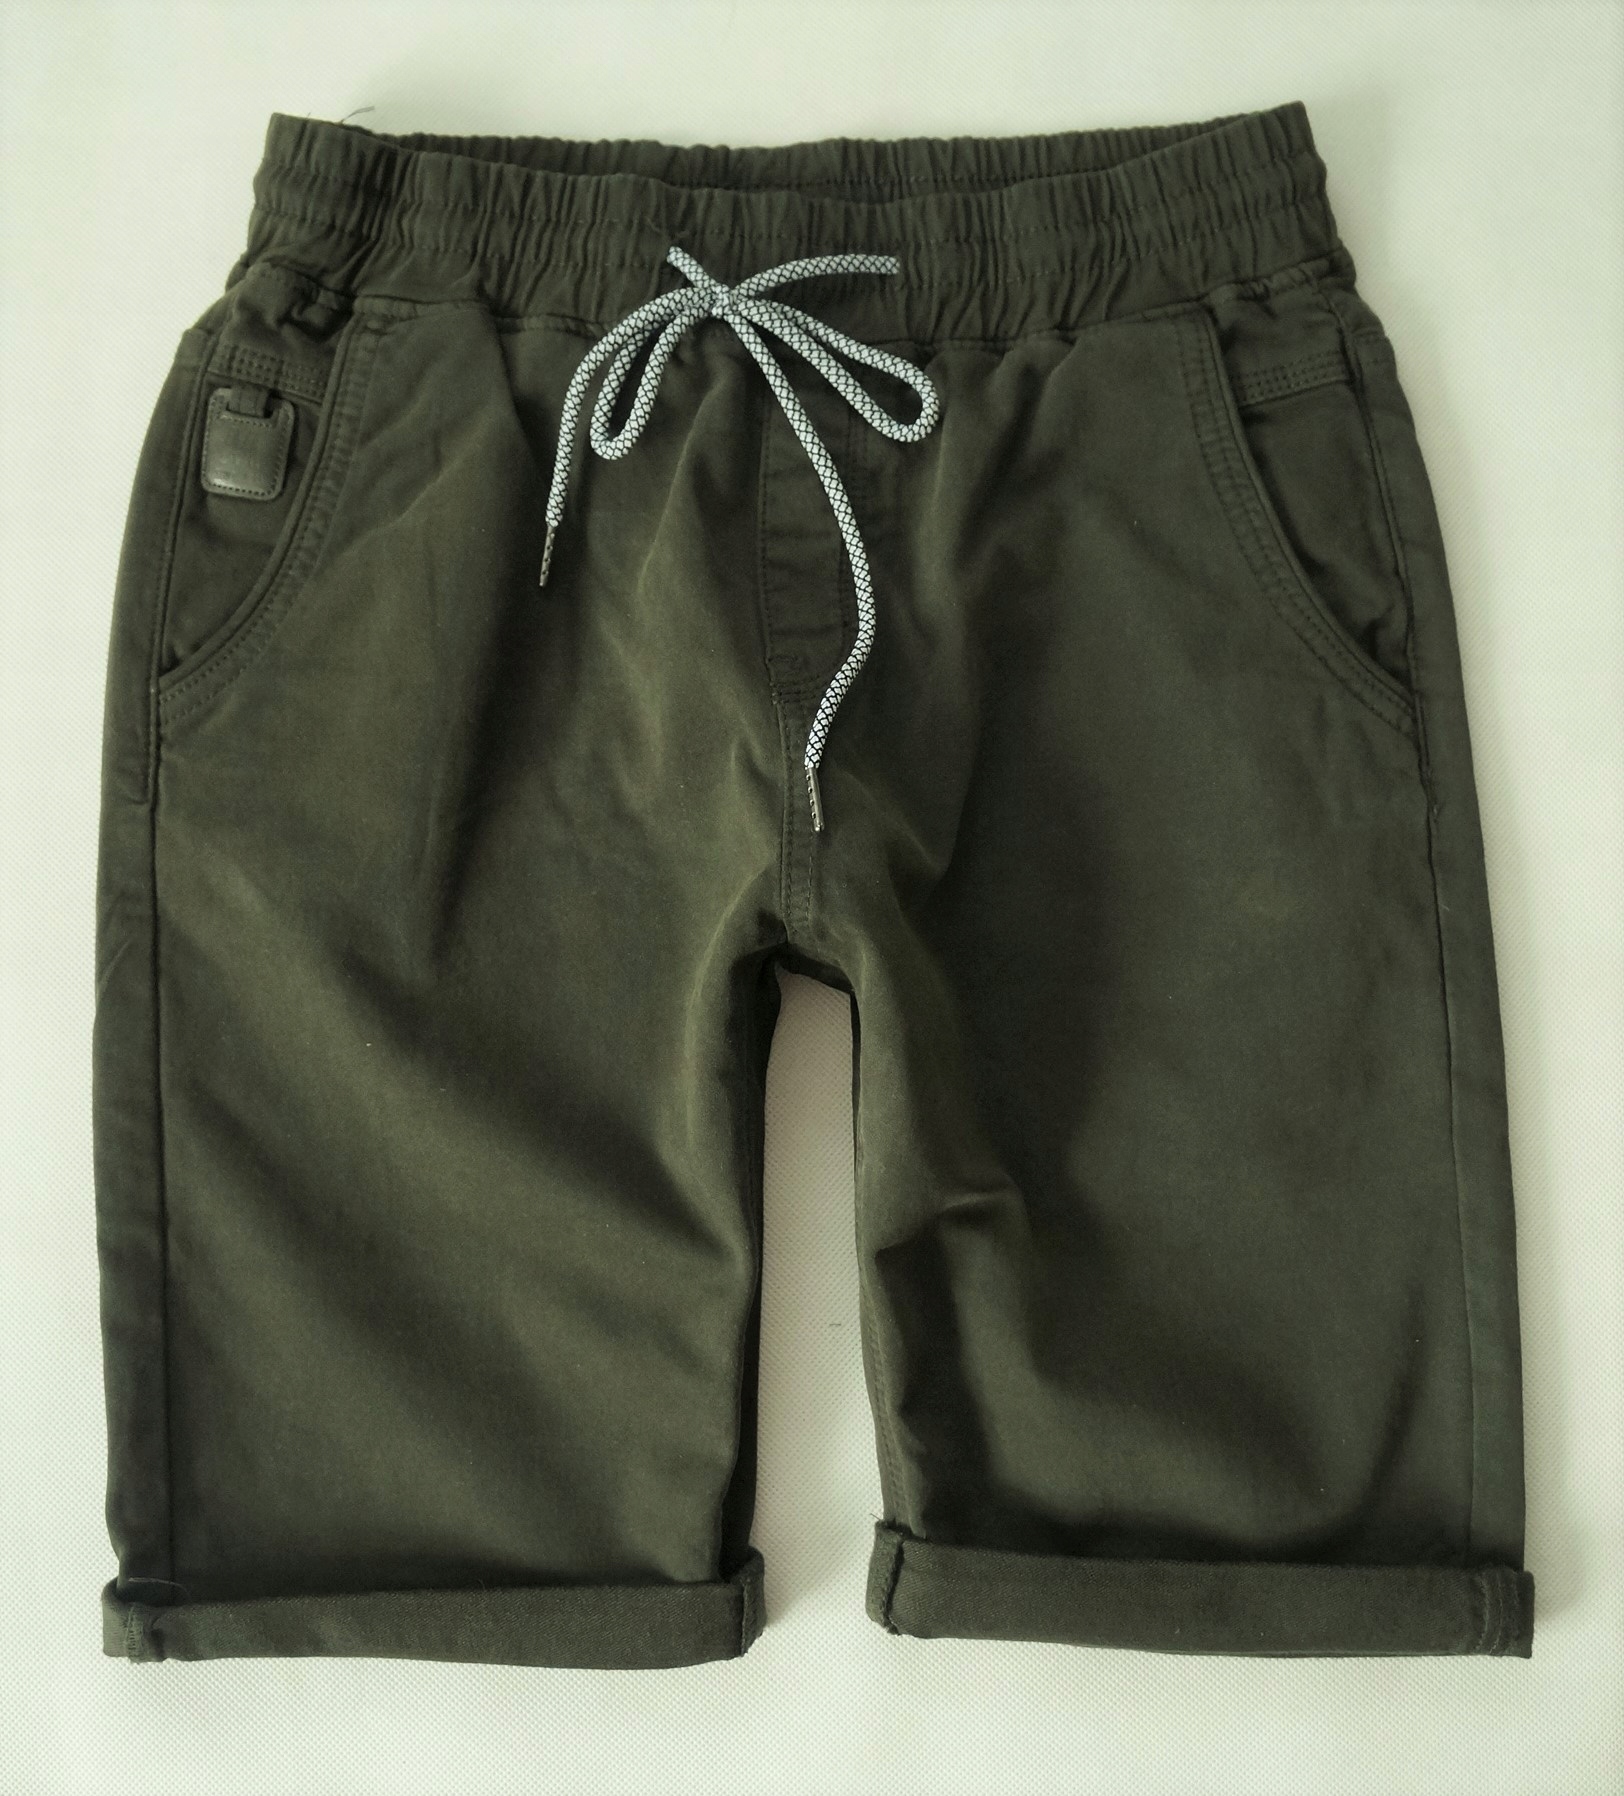 М. Сара удобные мужские шорты Шорты на резинке размер 38